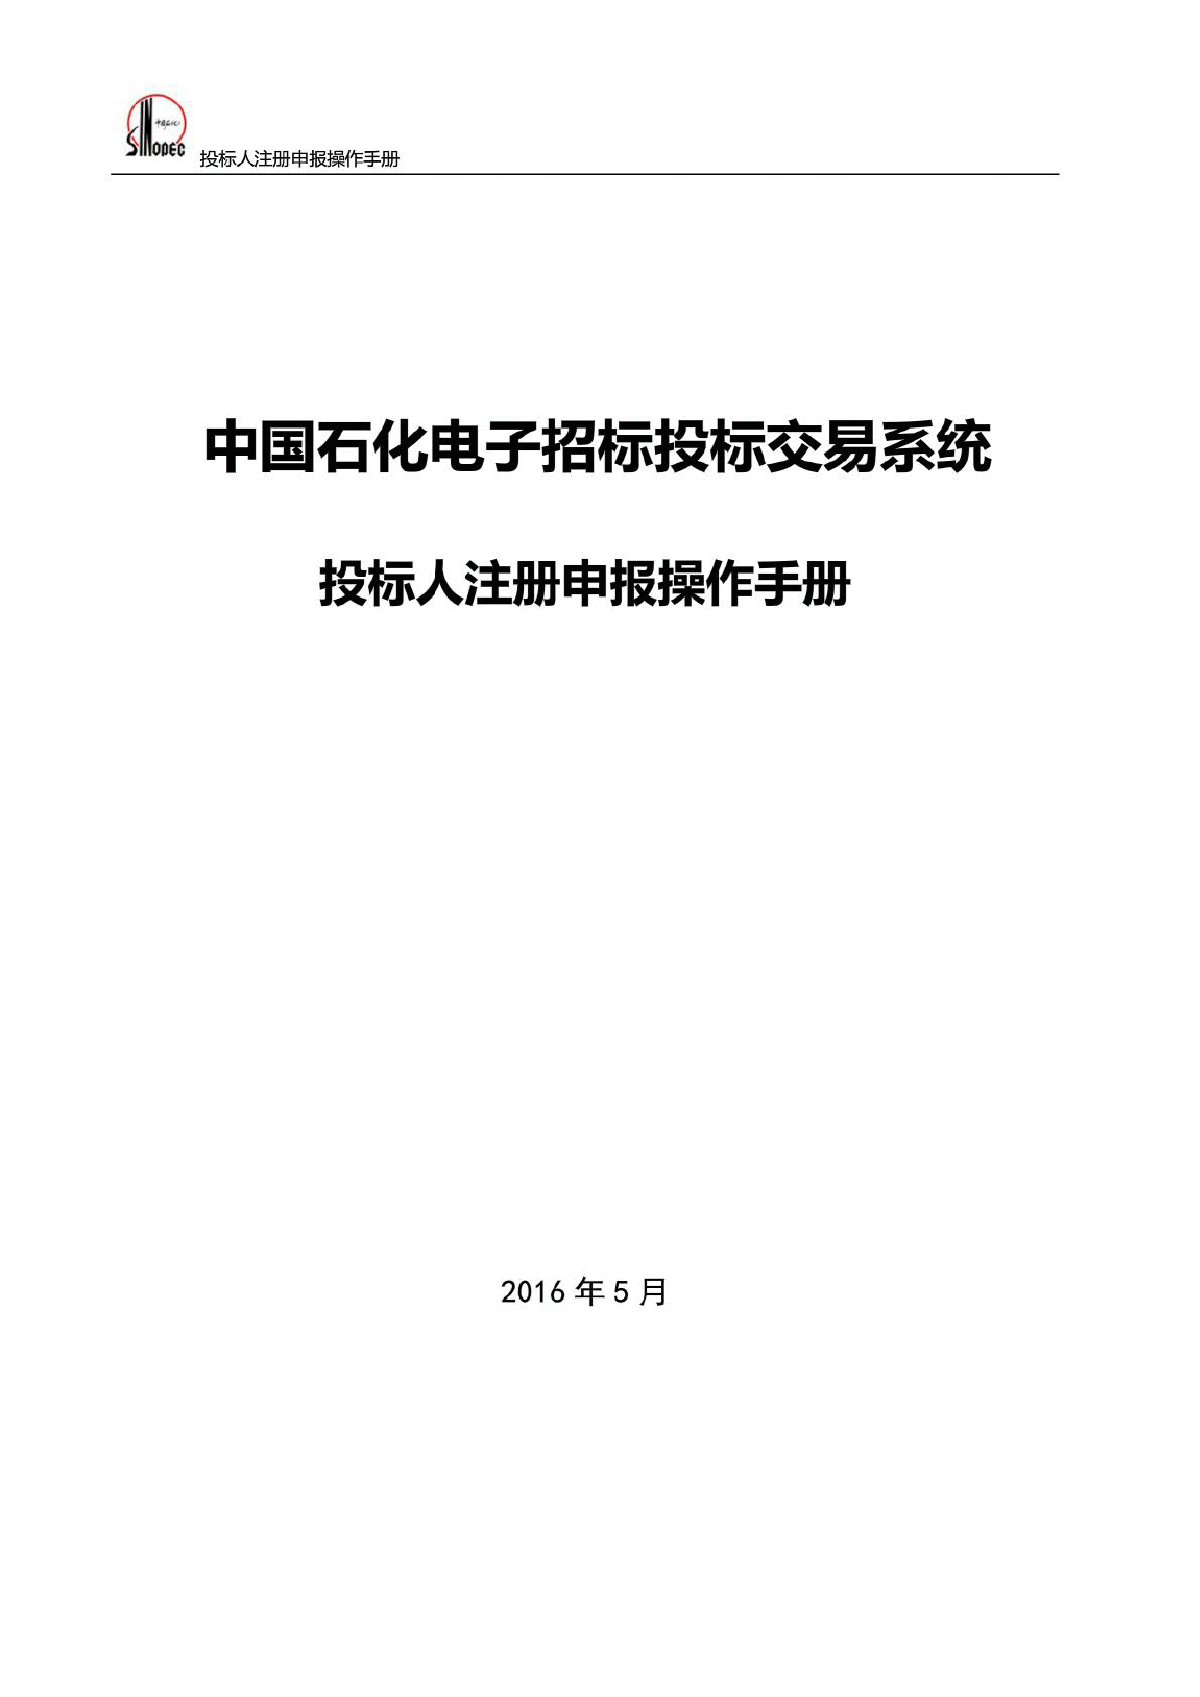 中国石化电子招标投标交易系统操作手册